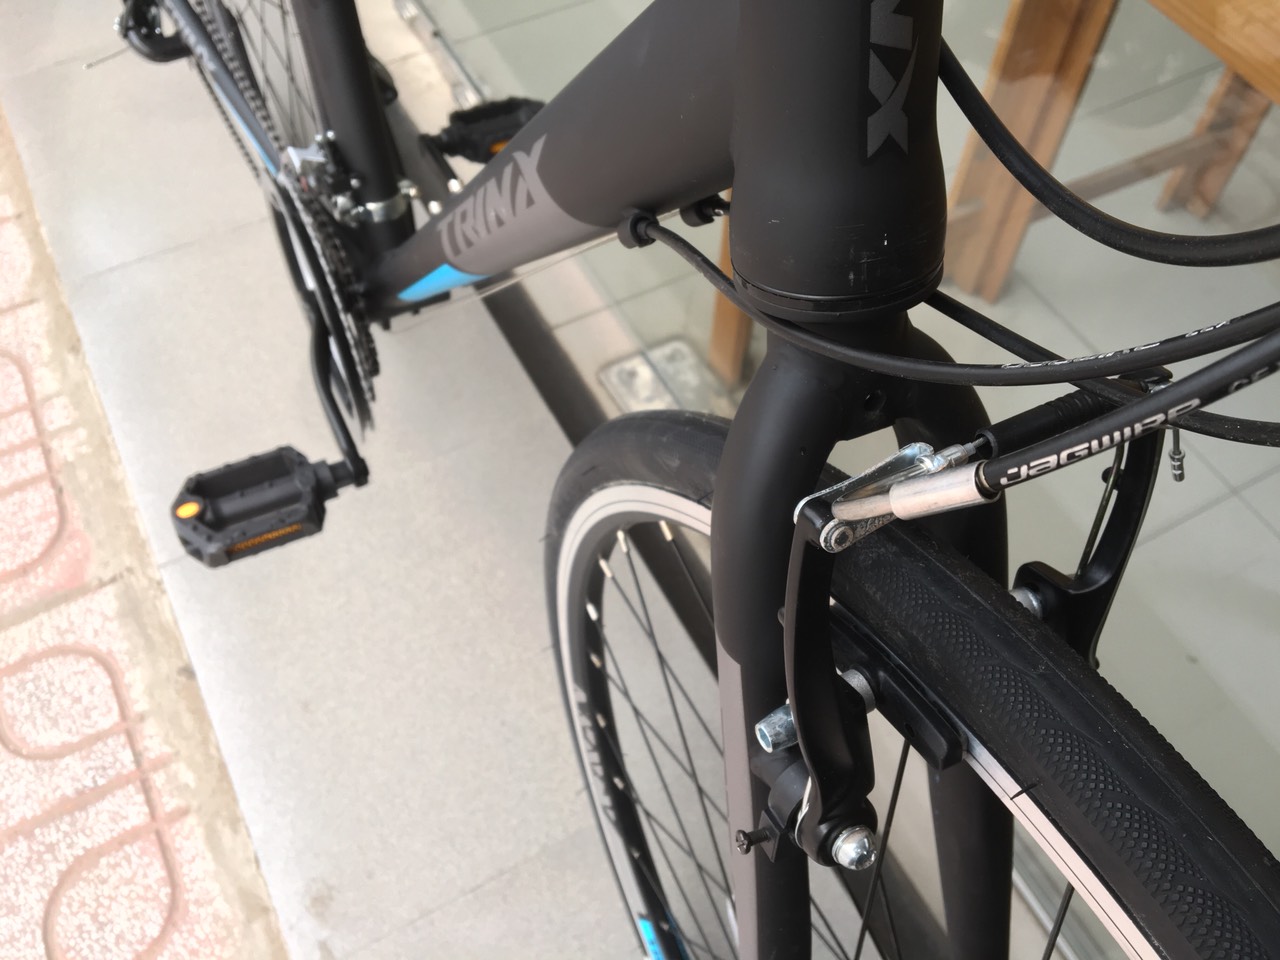 Xe đạp thể thao TRINX FREE 1.0 2019 Black Blue